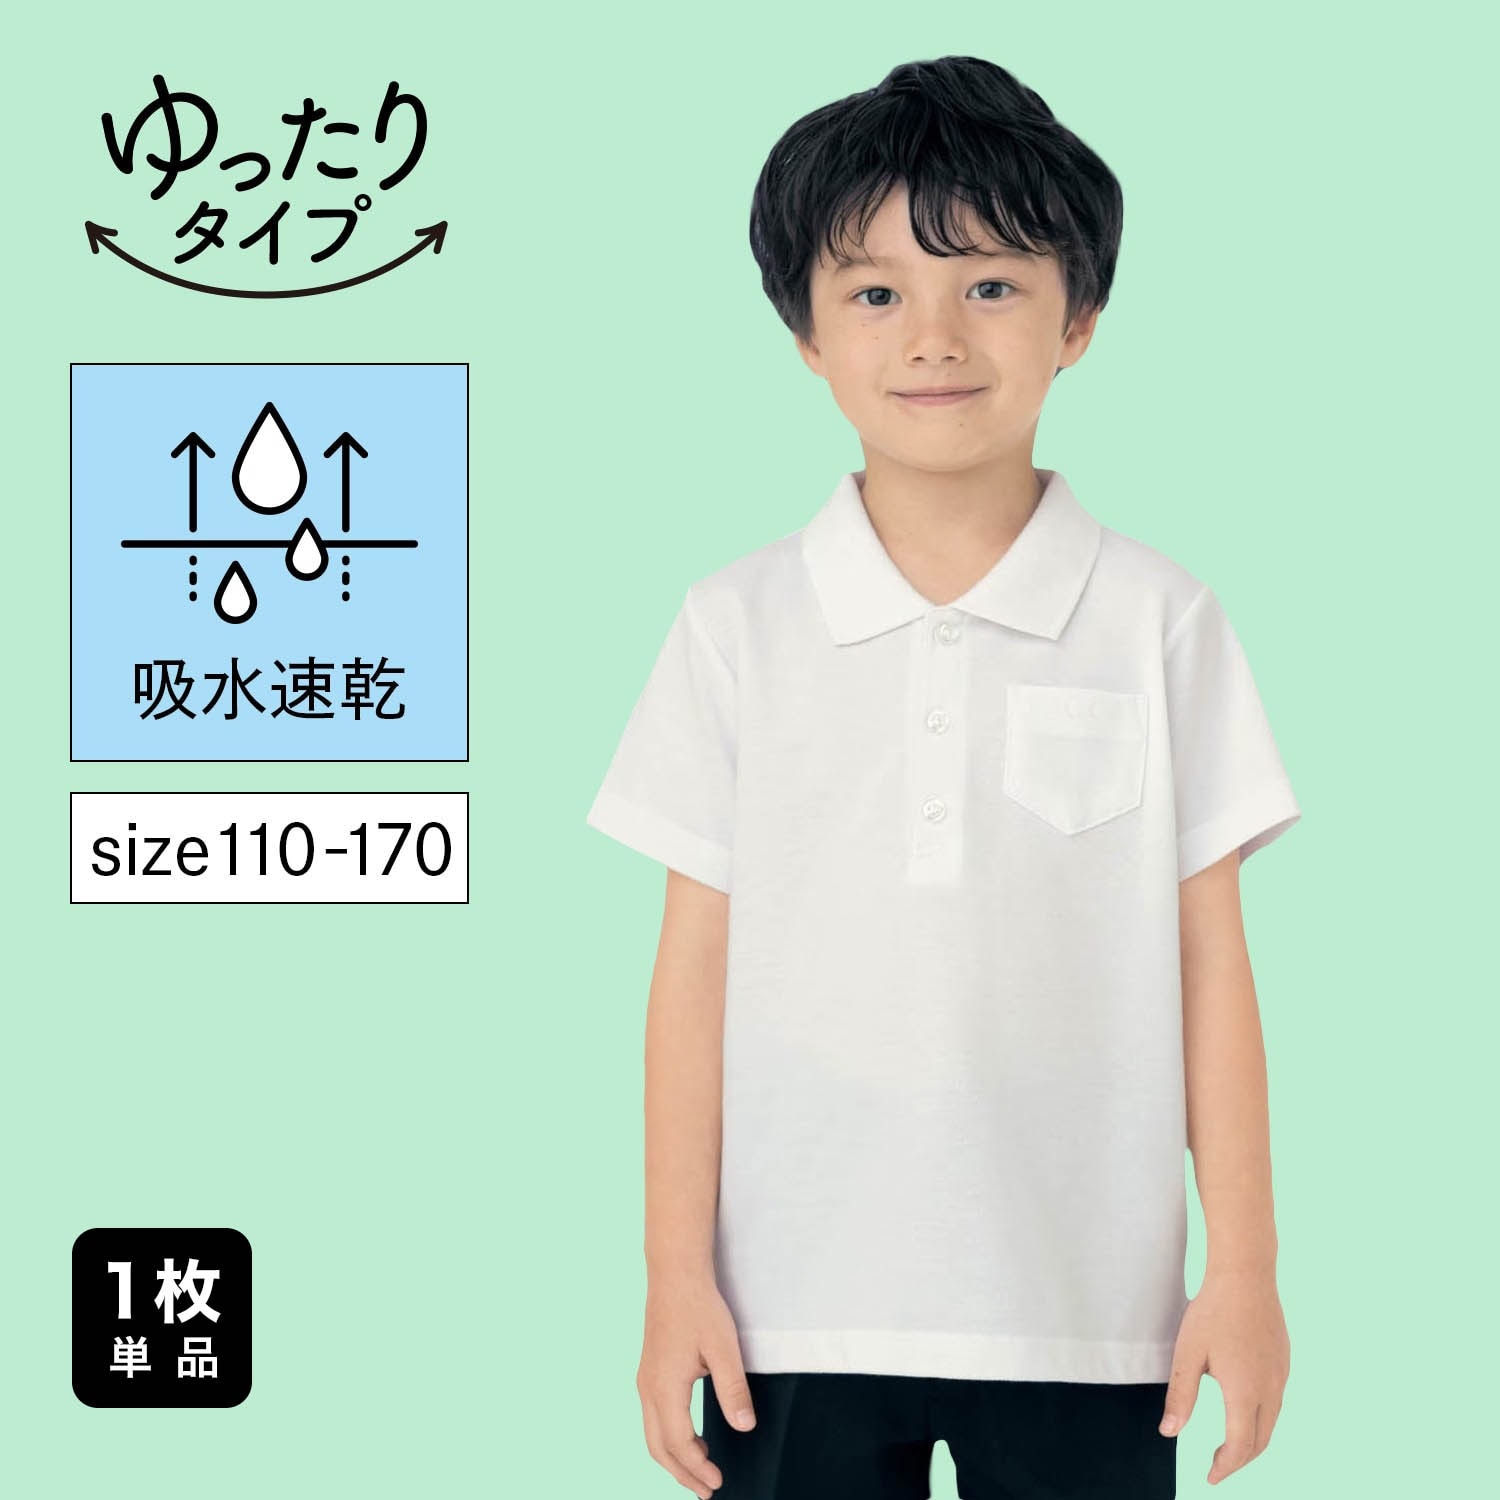 【ジータ/GITA】ドライ半袖ポロシャツ(ゆったり) 【制服 白】画像